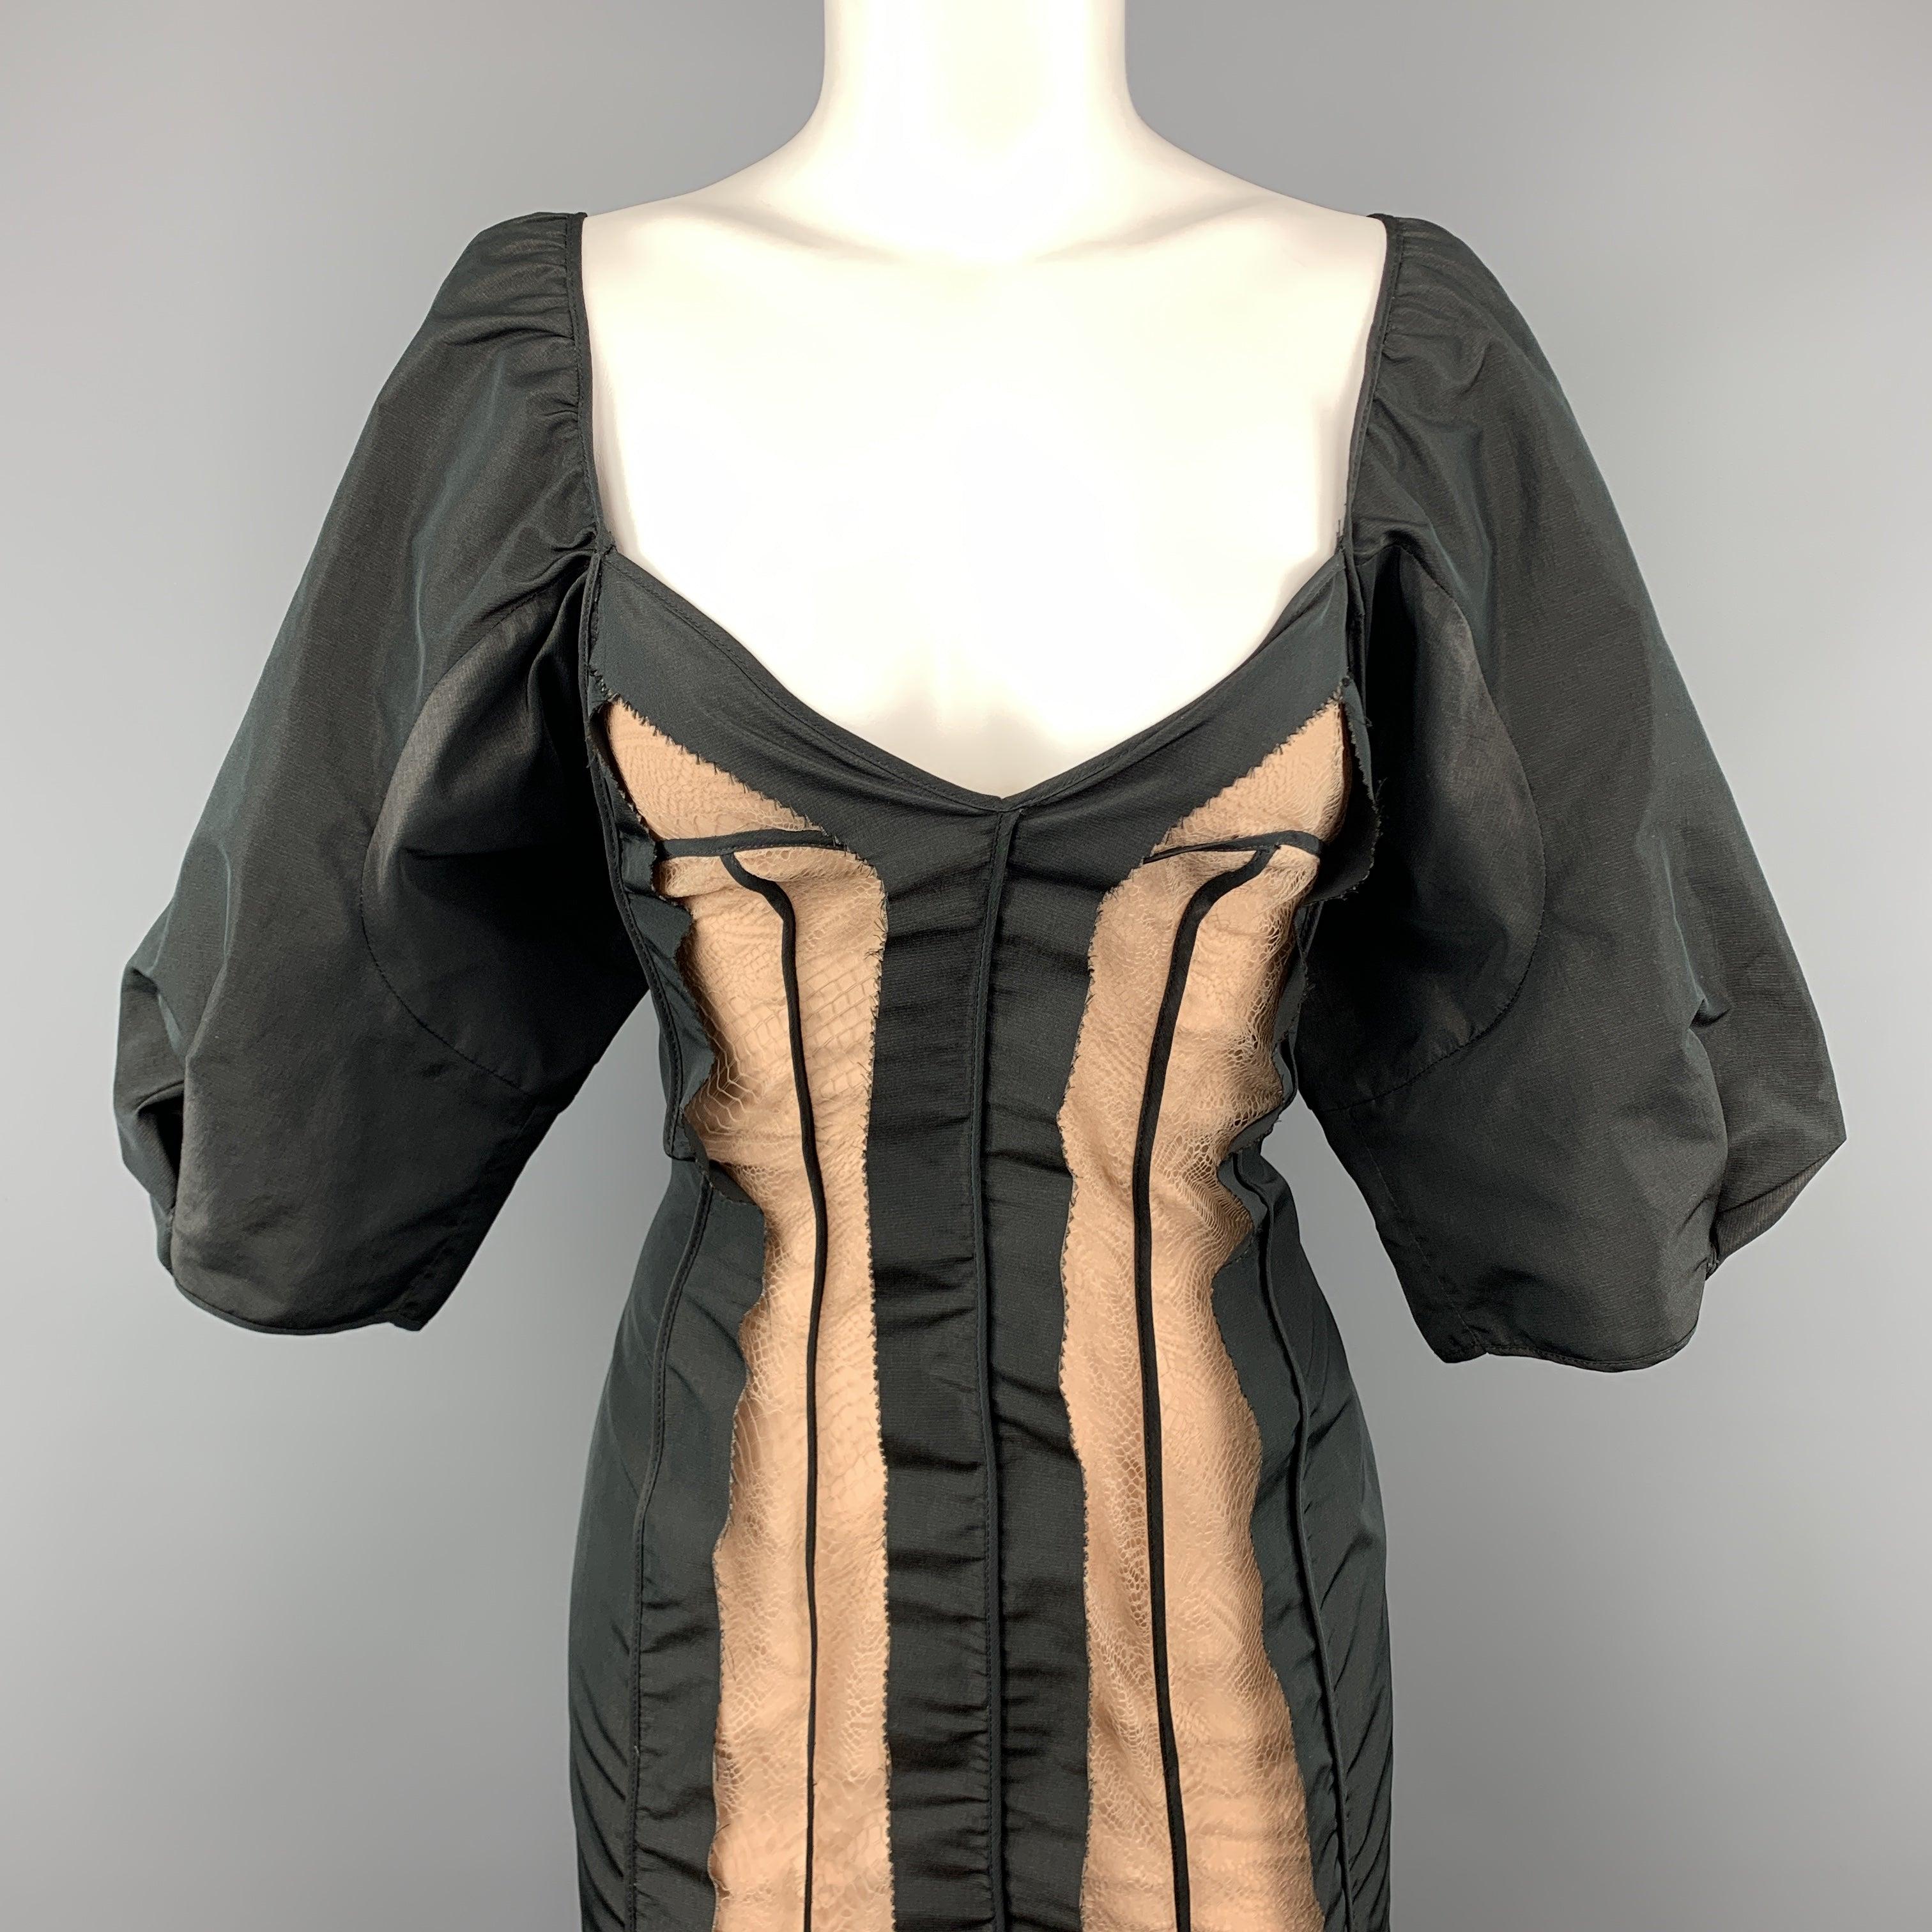 STELLA McCARTNEY Cocktail-Kleid aus schwarzem Seidentaft mit herzförmigem Ausschnitt, rohen Nähten mit Inside-Out-Effekt, beigefarbener, gefütterter Spitze in der Mitte und Ballonärmeln. Made in Italy Ausgezeichneter Pre-Owned Zustand. 

Markiert:  